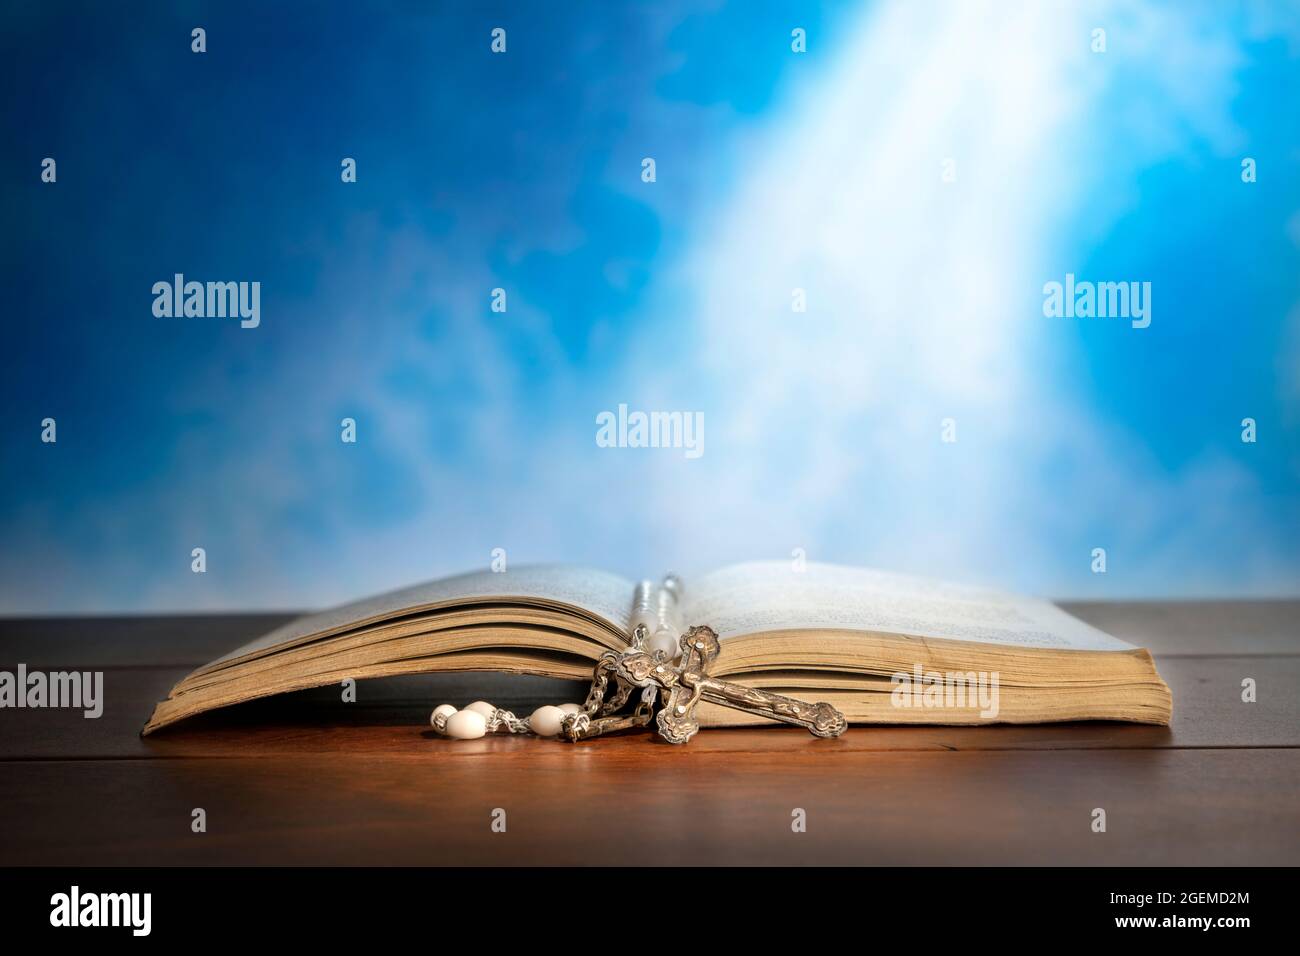 Immagine drammatica che mostra un fascio luminoso che brilla su una vecchia bibbia con un rosario che si posa davanti ad essa. Foto Stock